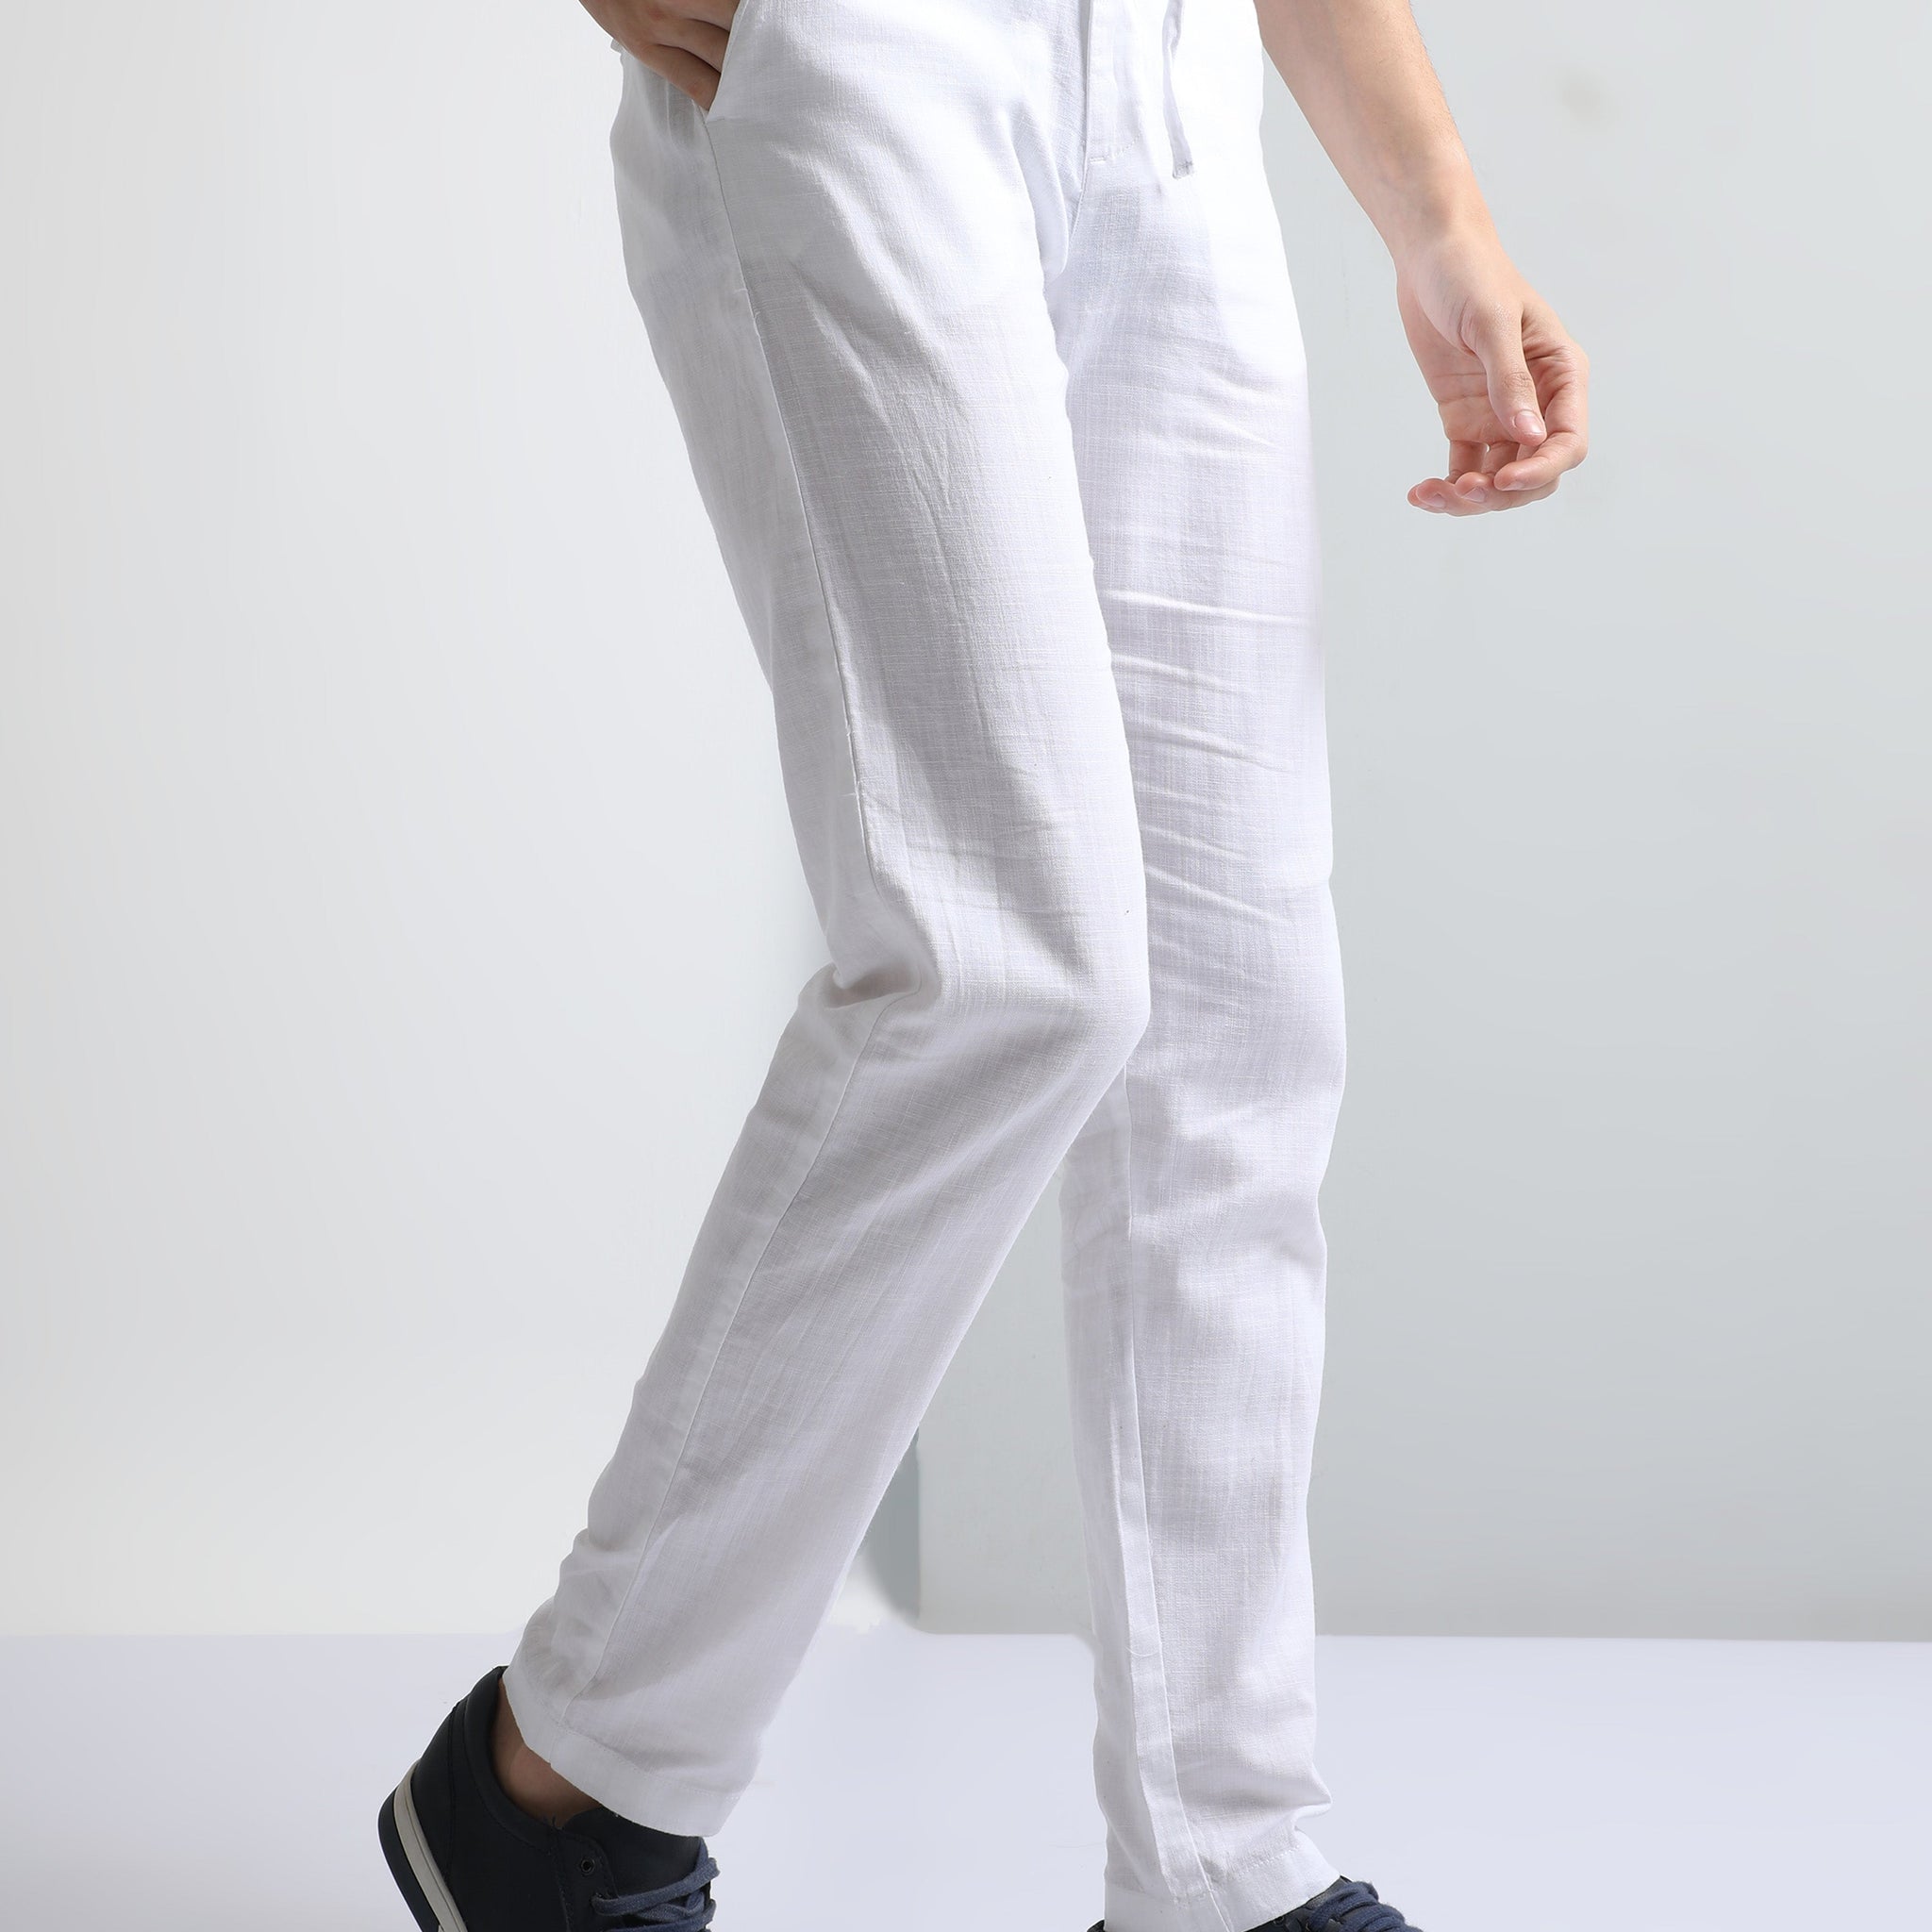 White Men's Drawcod Linen Fashion Pant